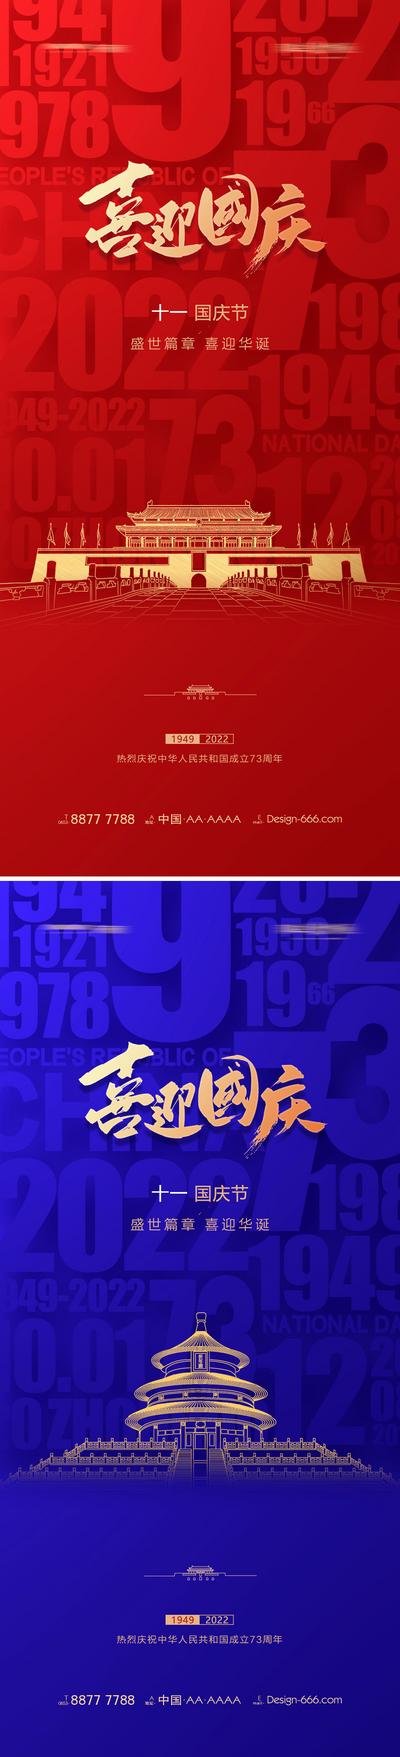 南门网 海报 地产 公历节日 国庆节 喜迎华诞 天安门